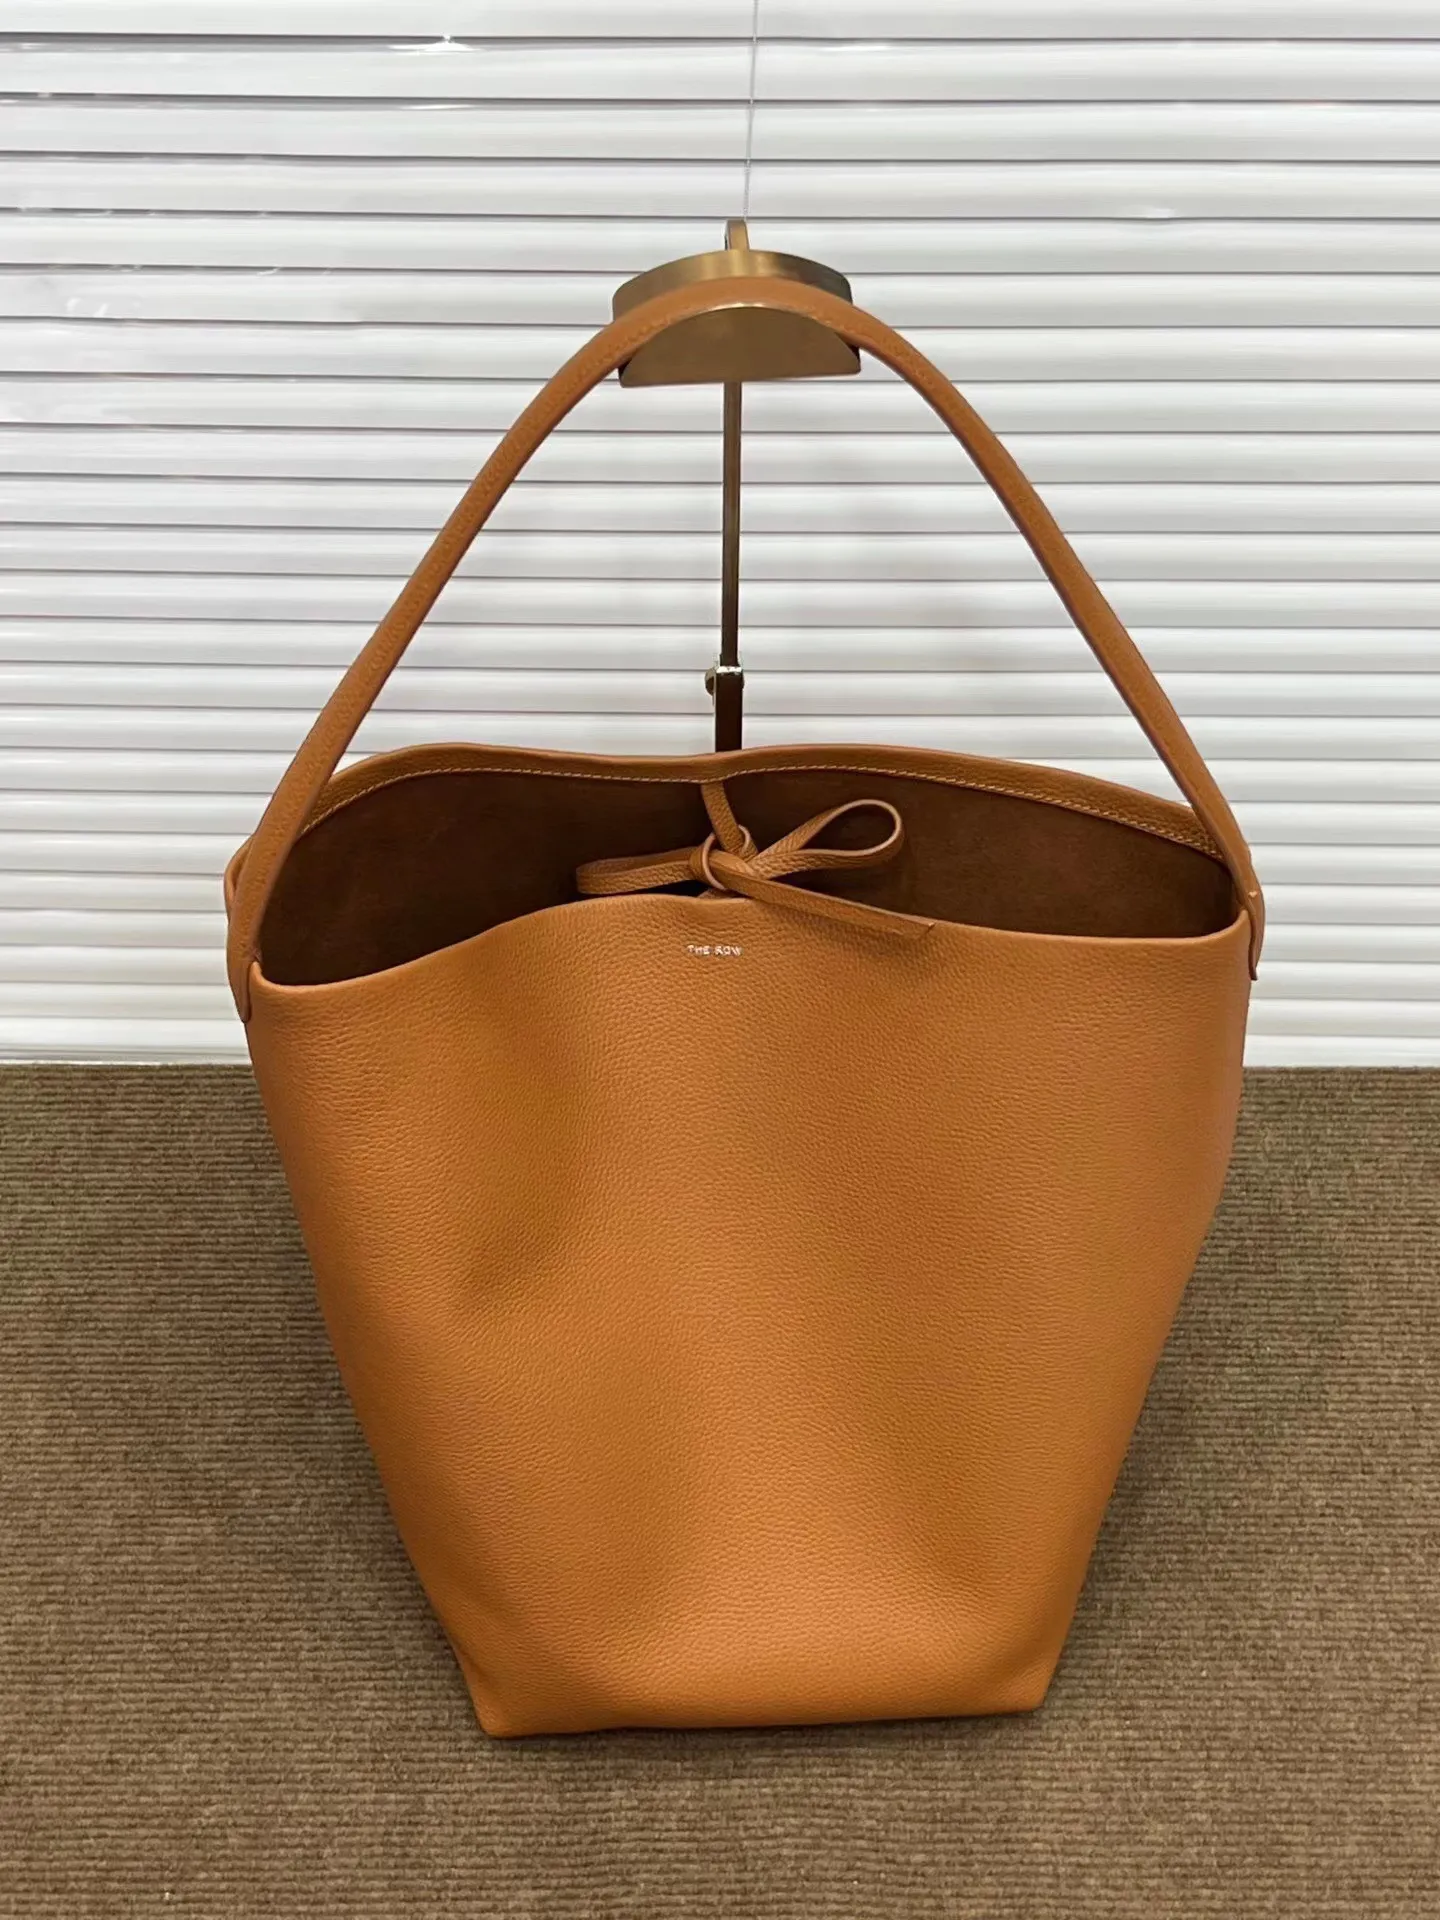 10a Bag Designer Tote Bag Bags Designers Bucket Moda Couro macio marrom preto Capacidade de várias cores Luxurys bolsas de mulher bolsas de mulher